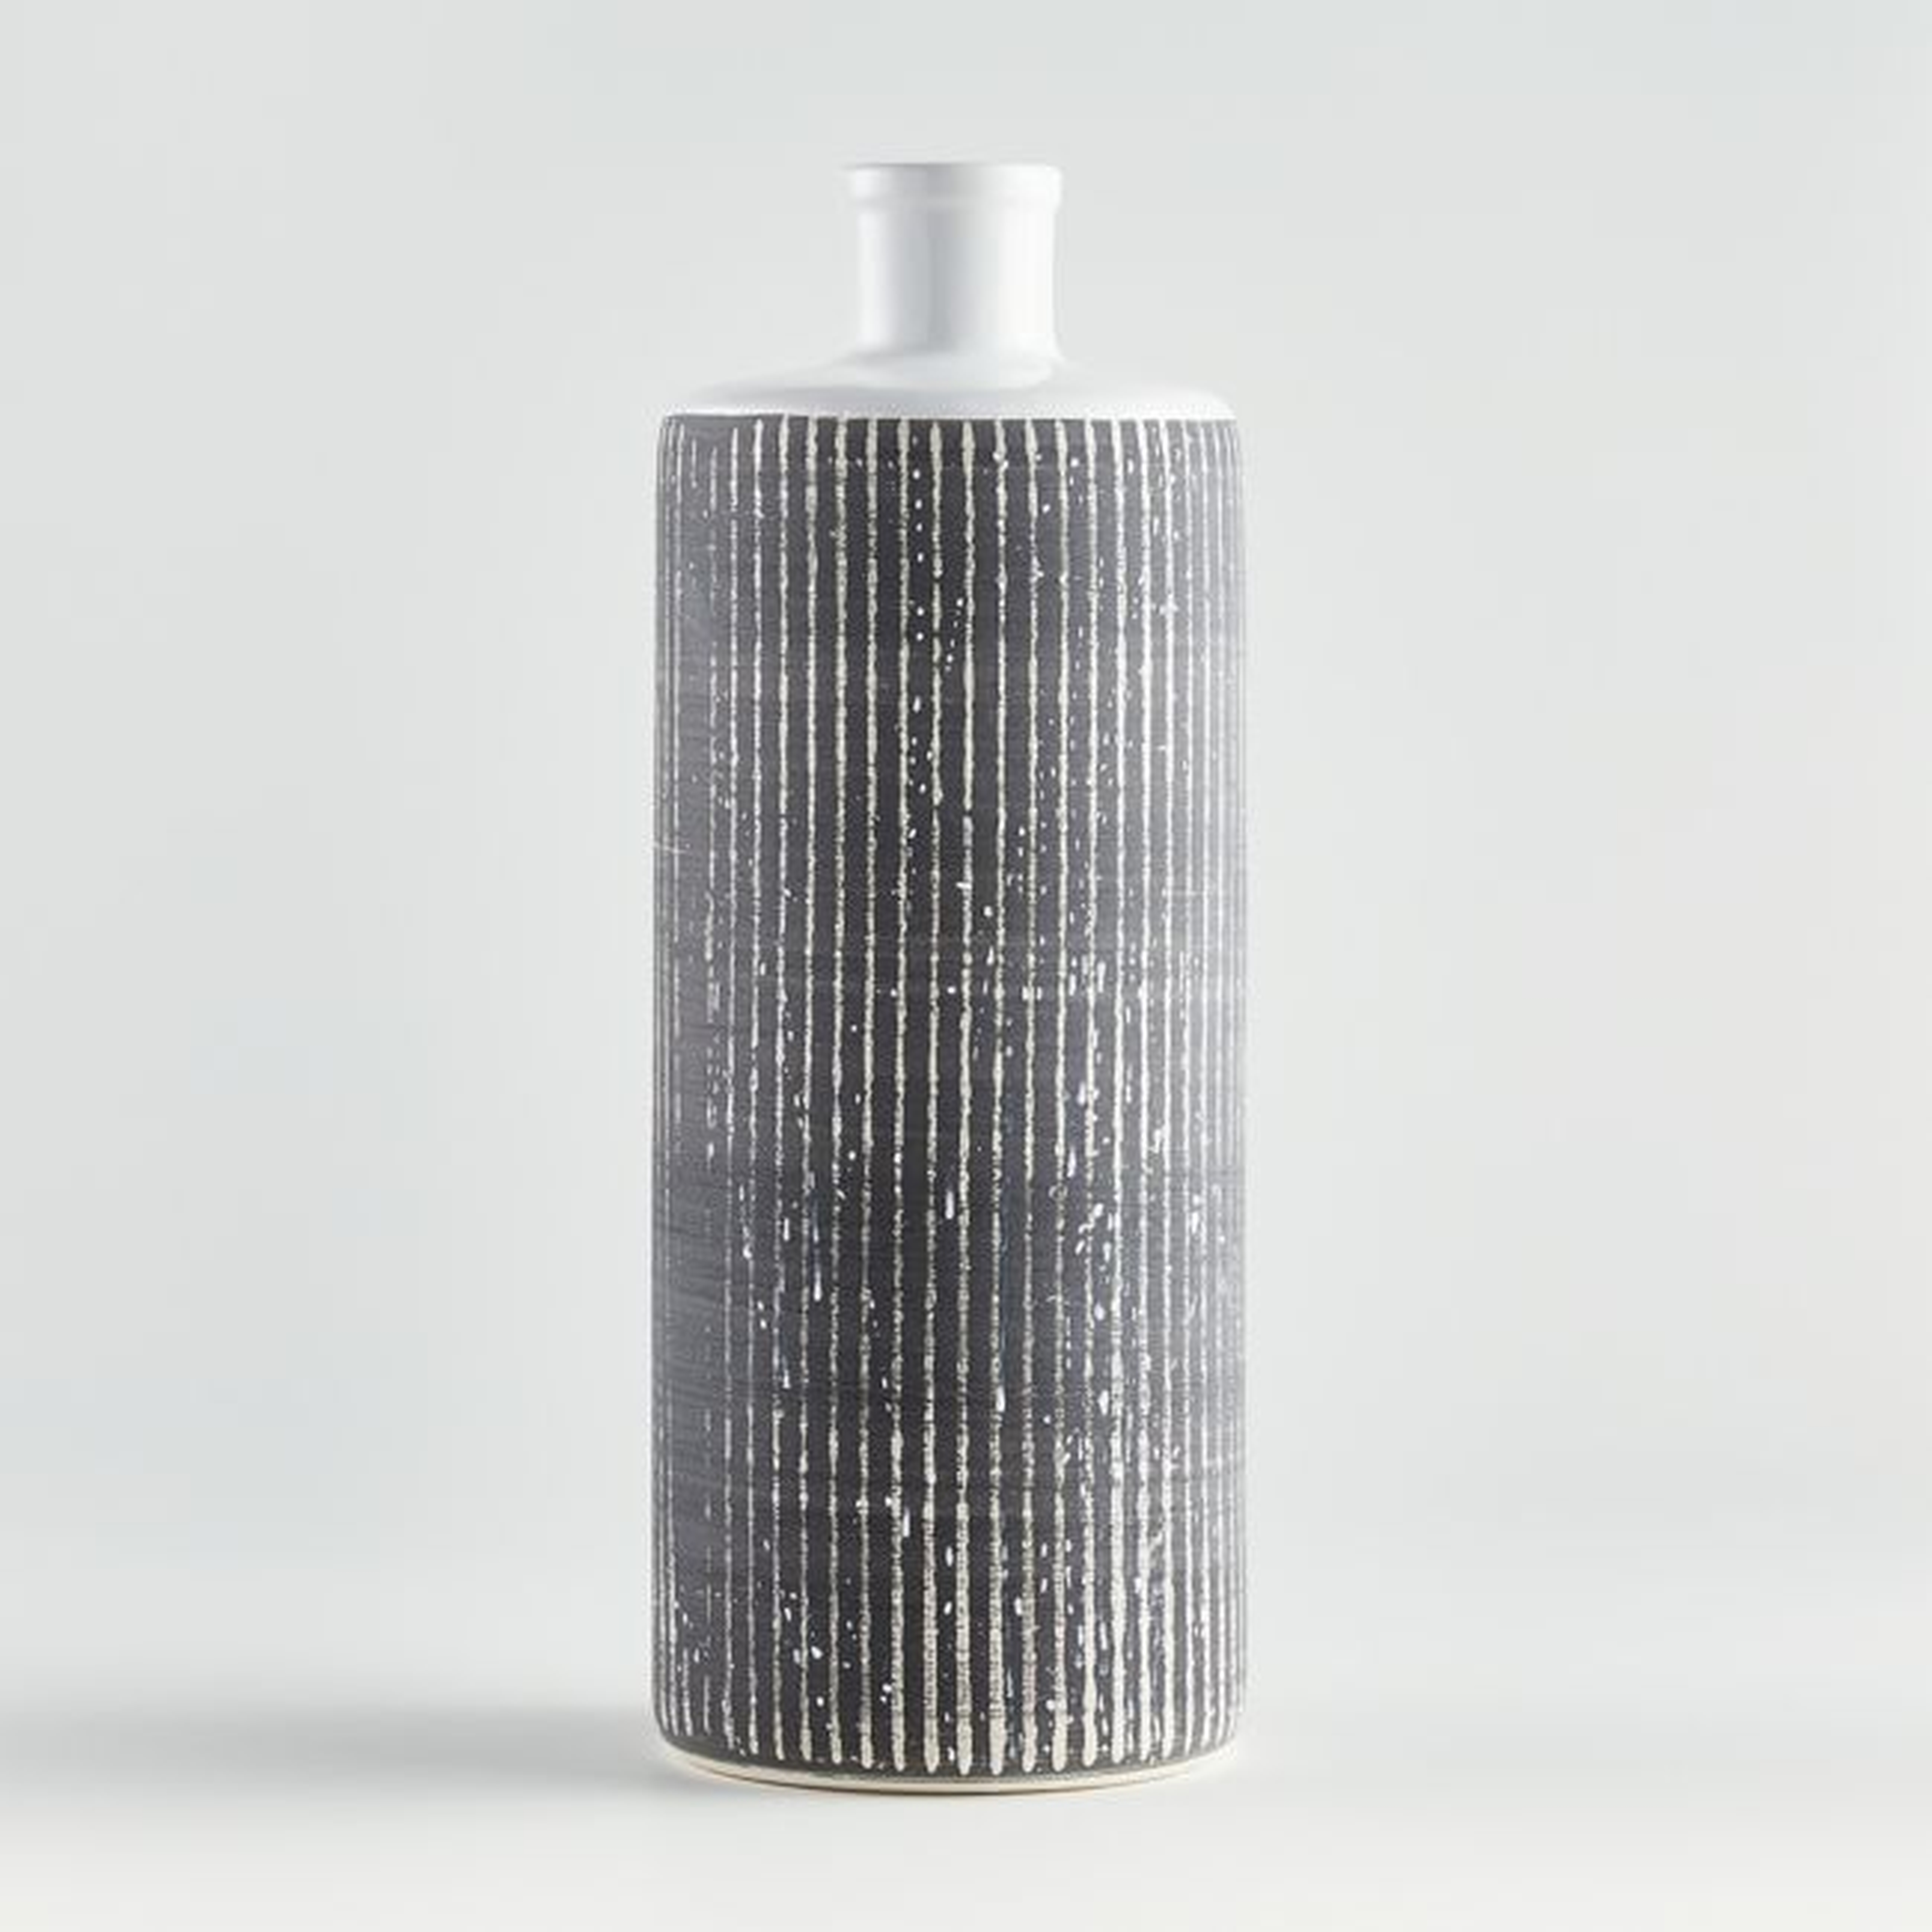 Elmslie Black-and-White Ceramic Bottle Vase - Crate and Barrel